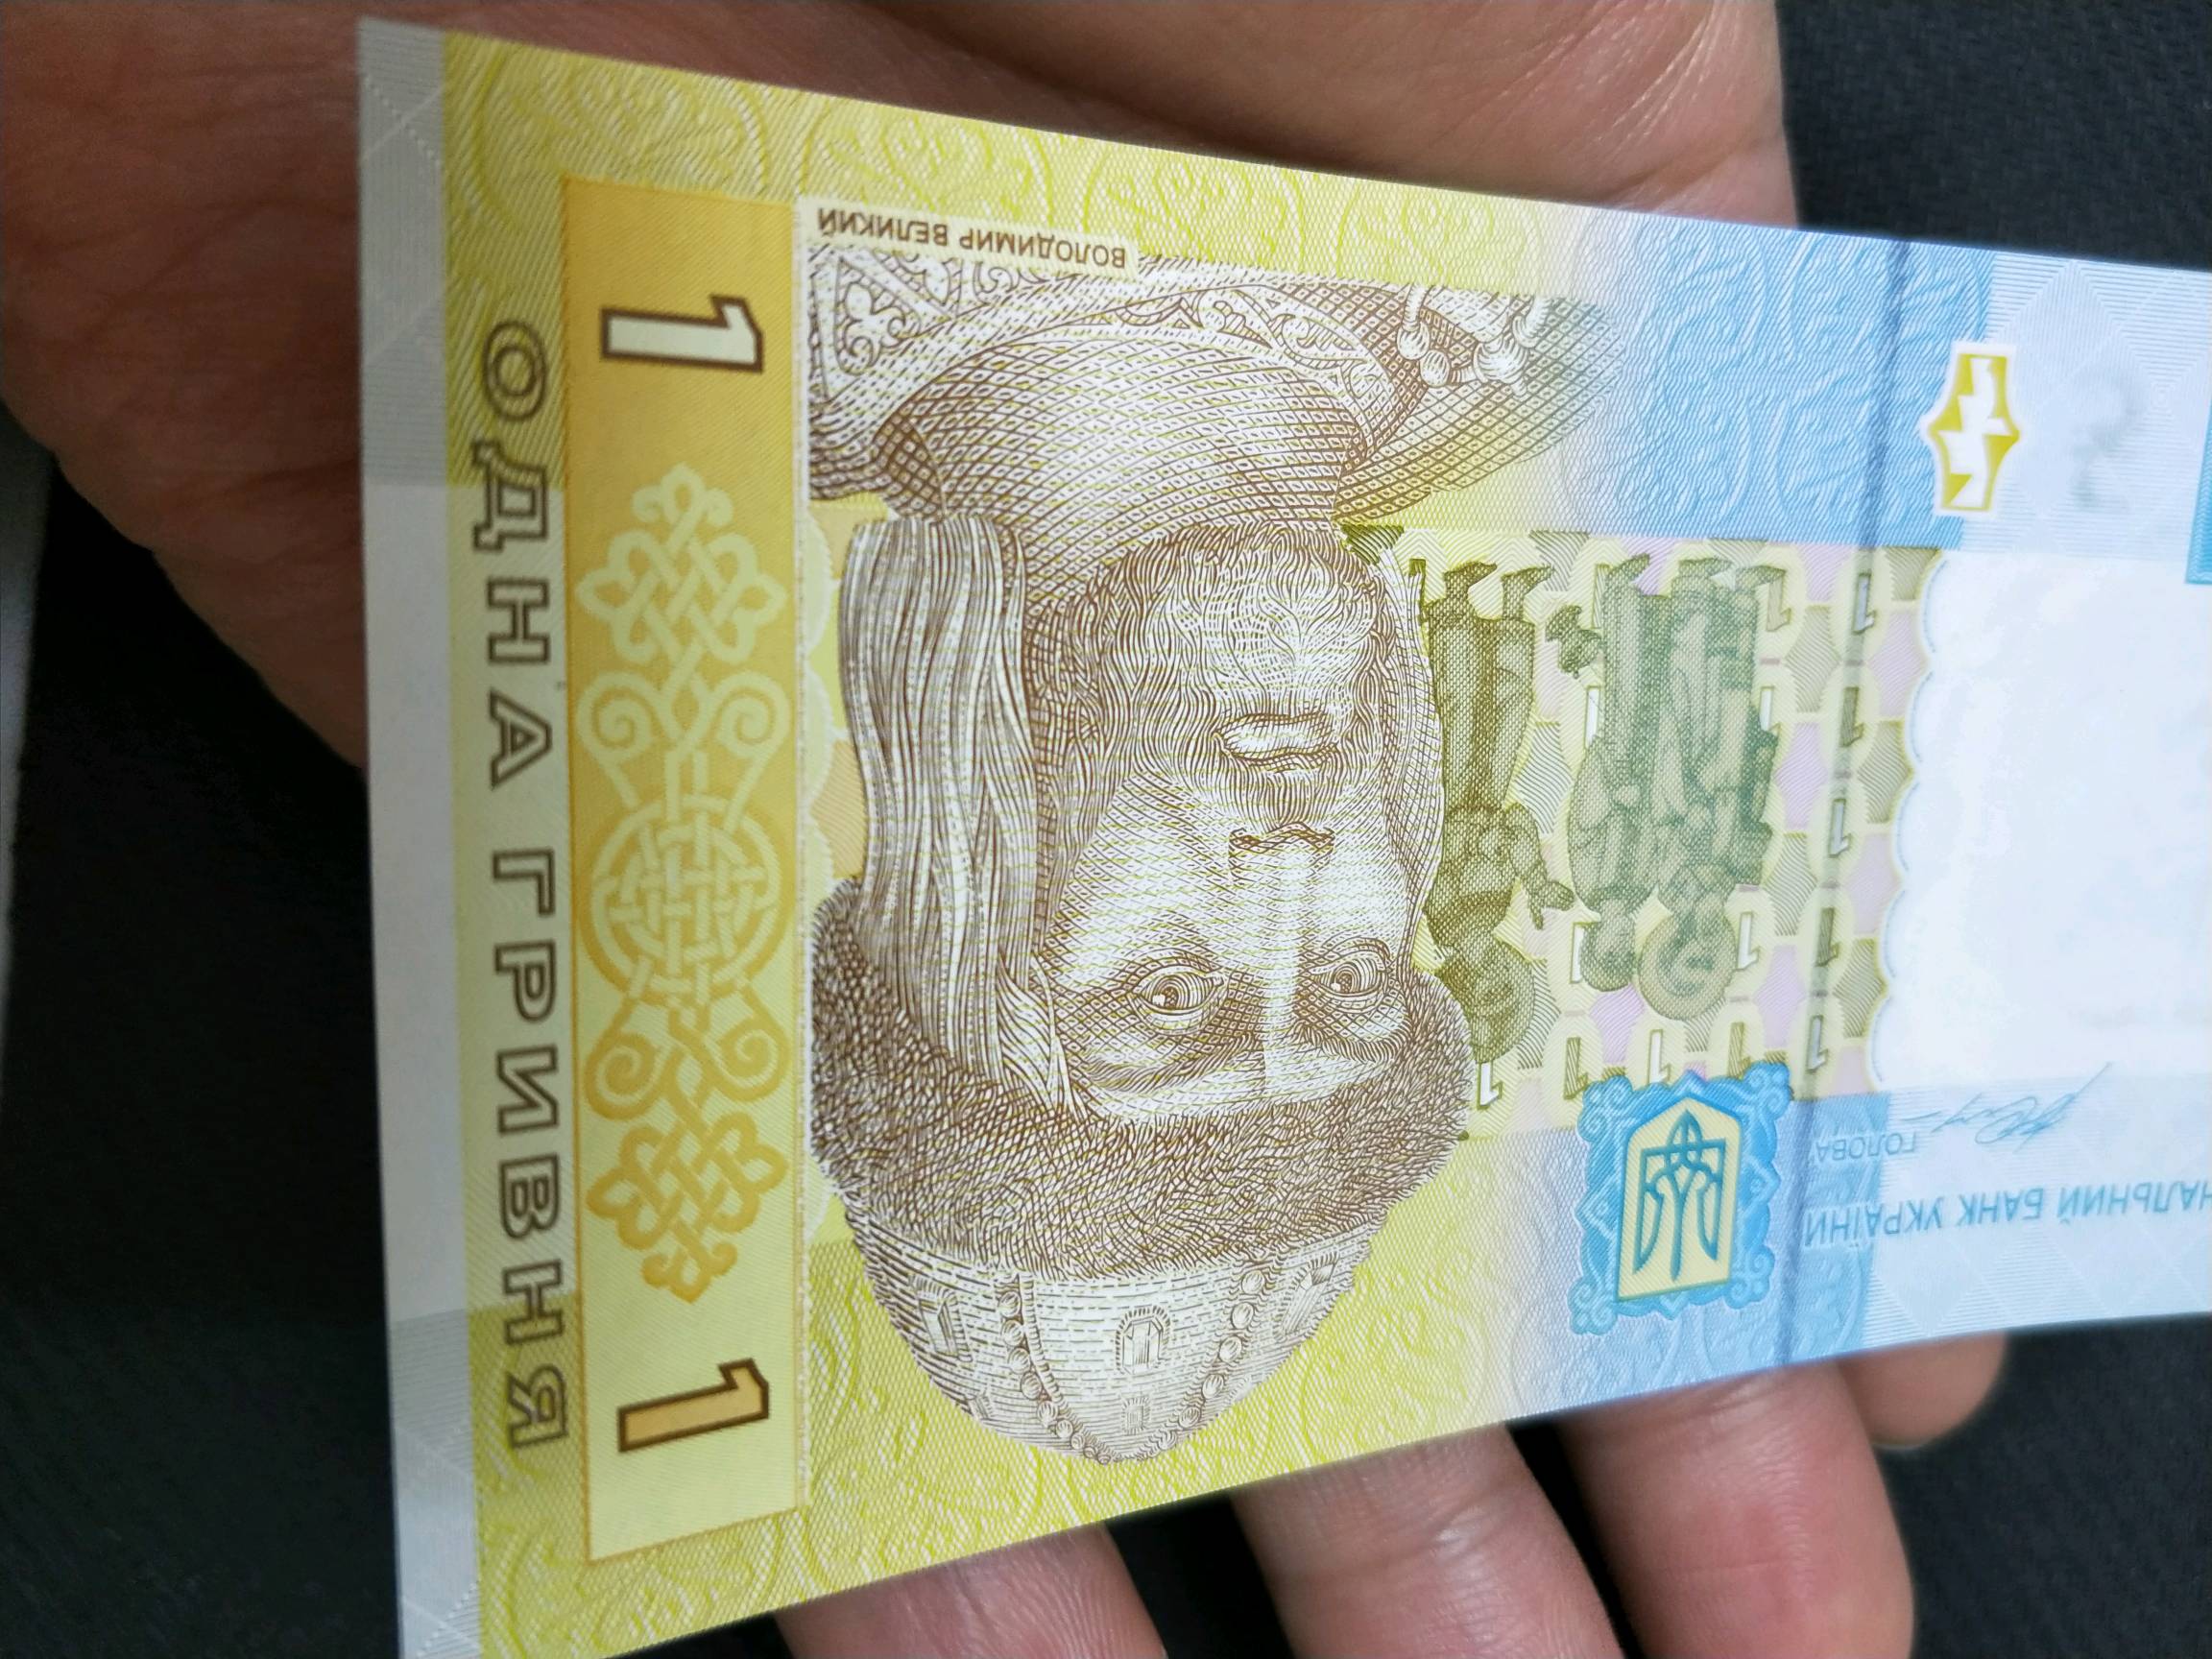 【包邮】乌克兰纸币一张面值1元,全新全品全国包邮发